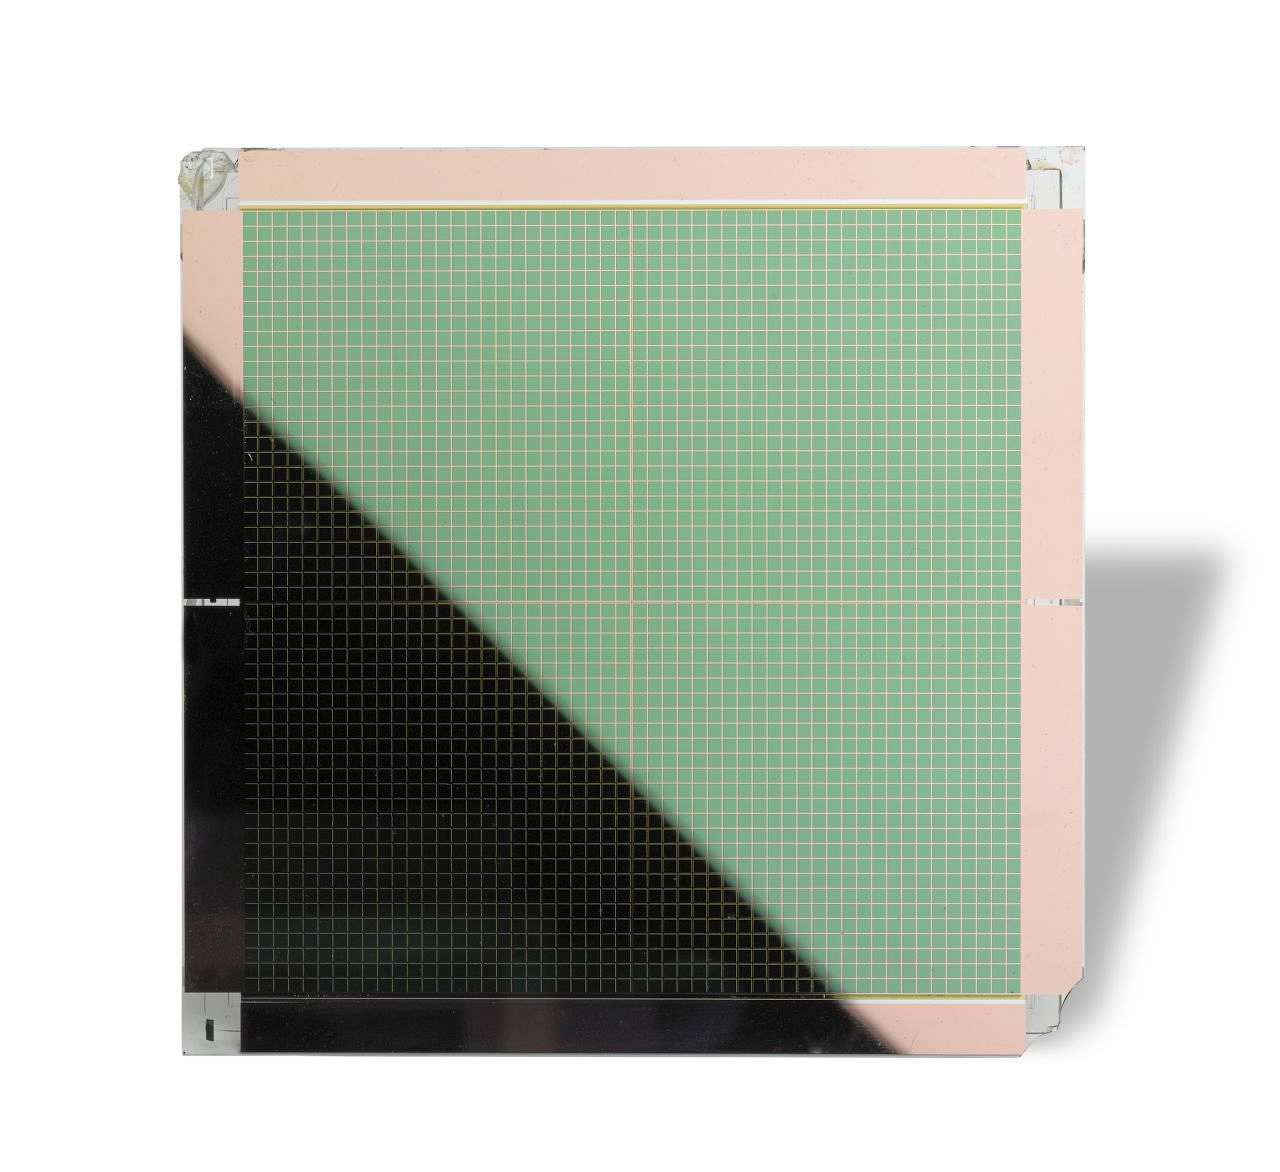 Quadratische Platte, Vorderseite kupferfarbener Rand, mittig in grün-kupferfarbene Segmente geteilt; Rückseite silberfarben. Platte in schwarzer Verpackung. 